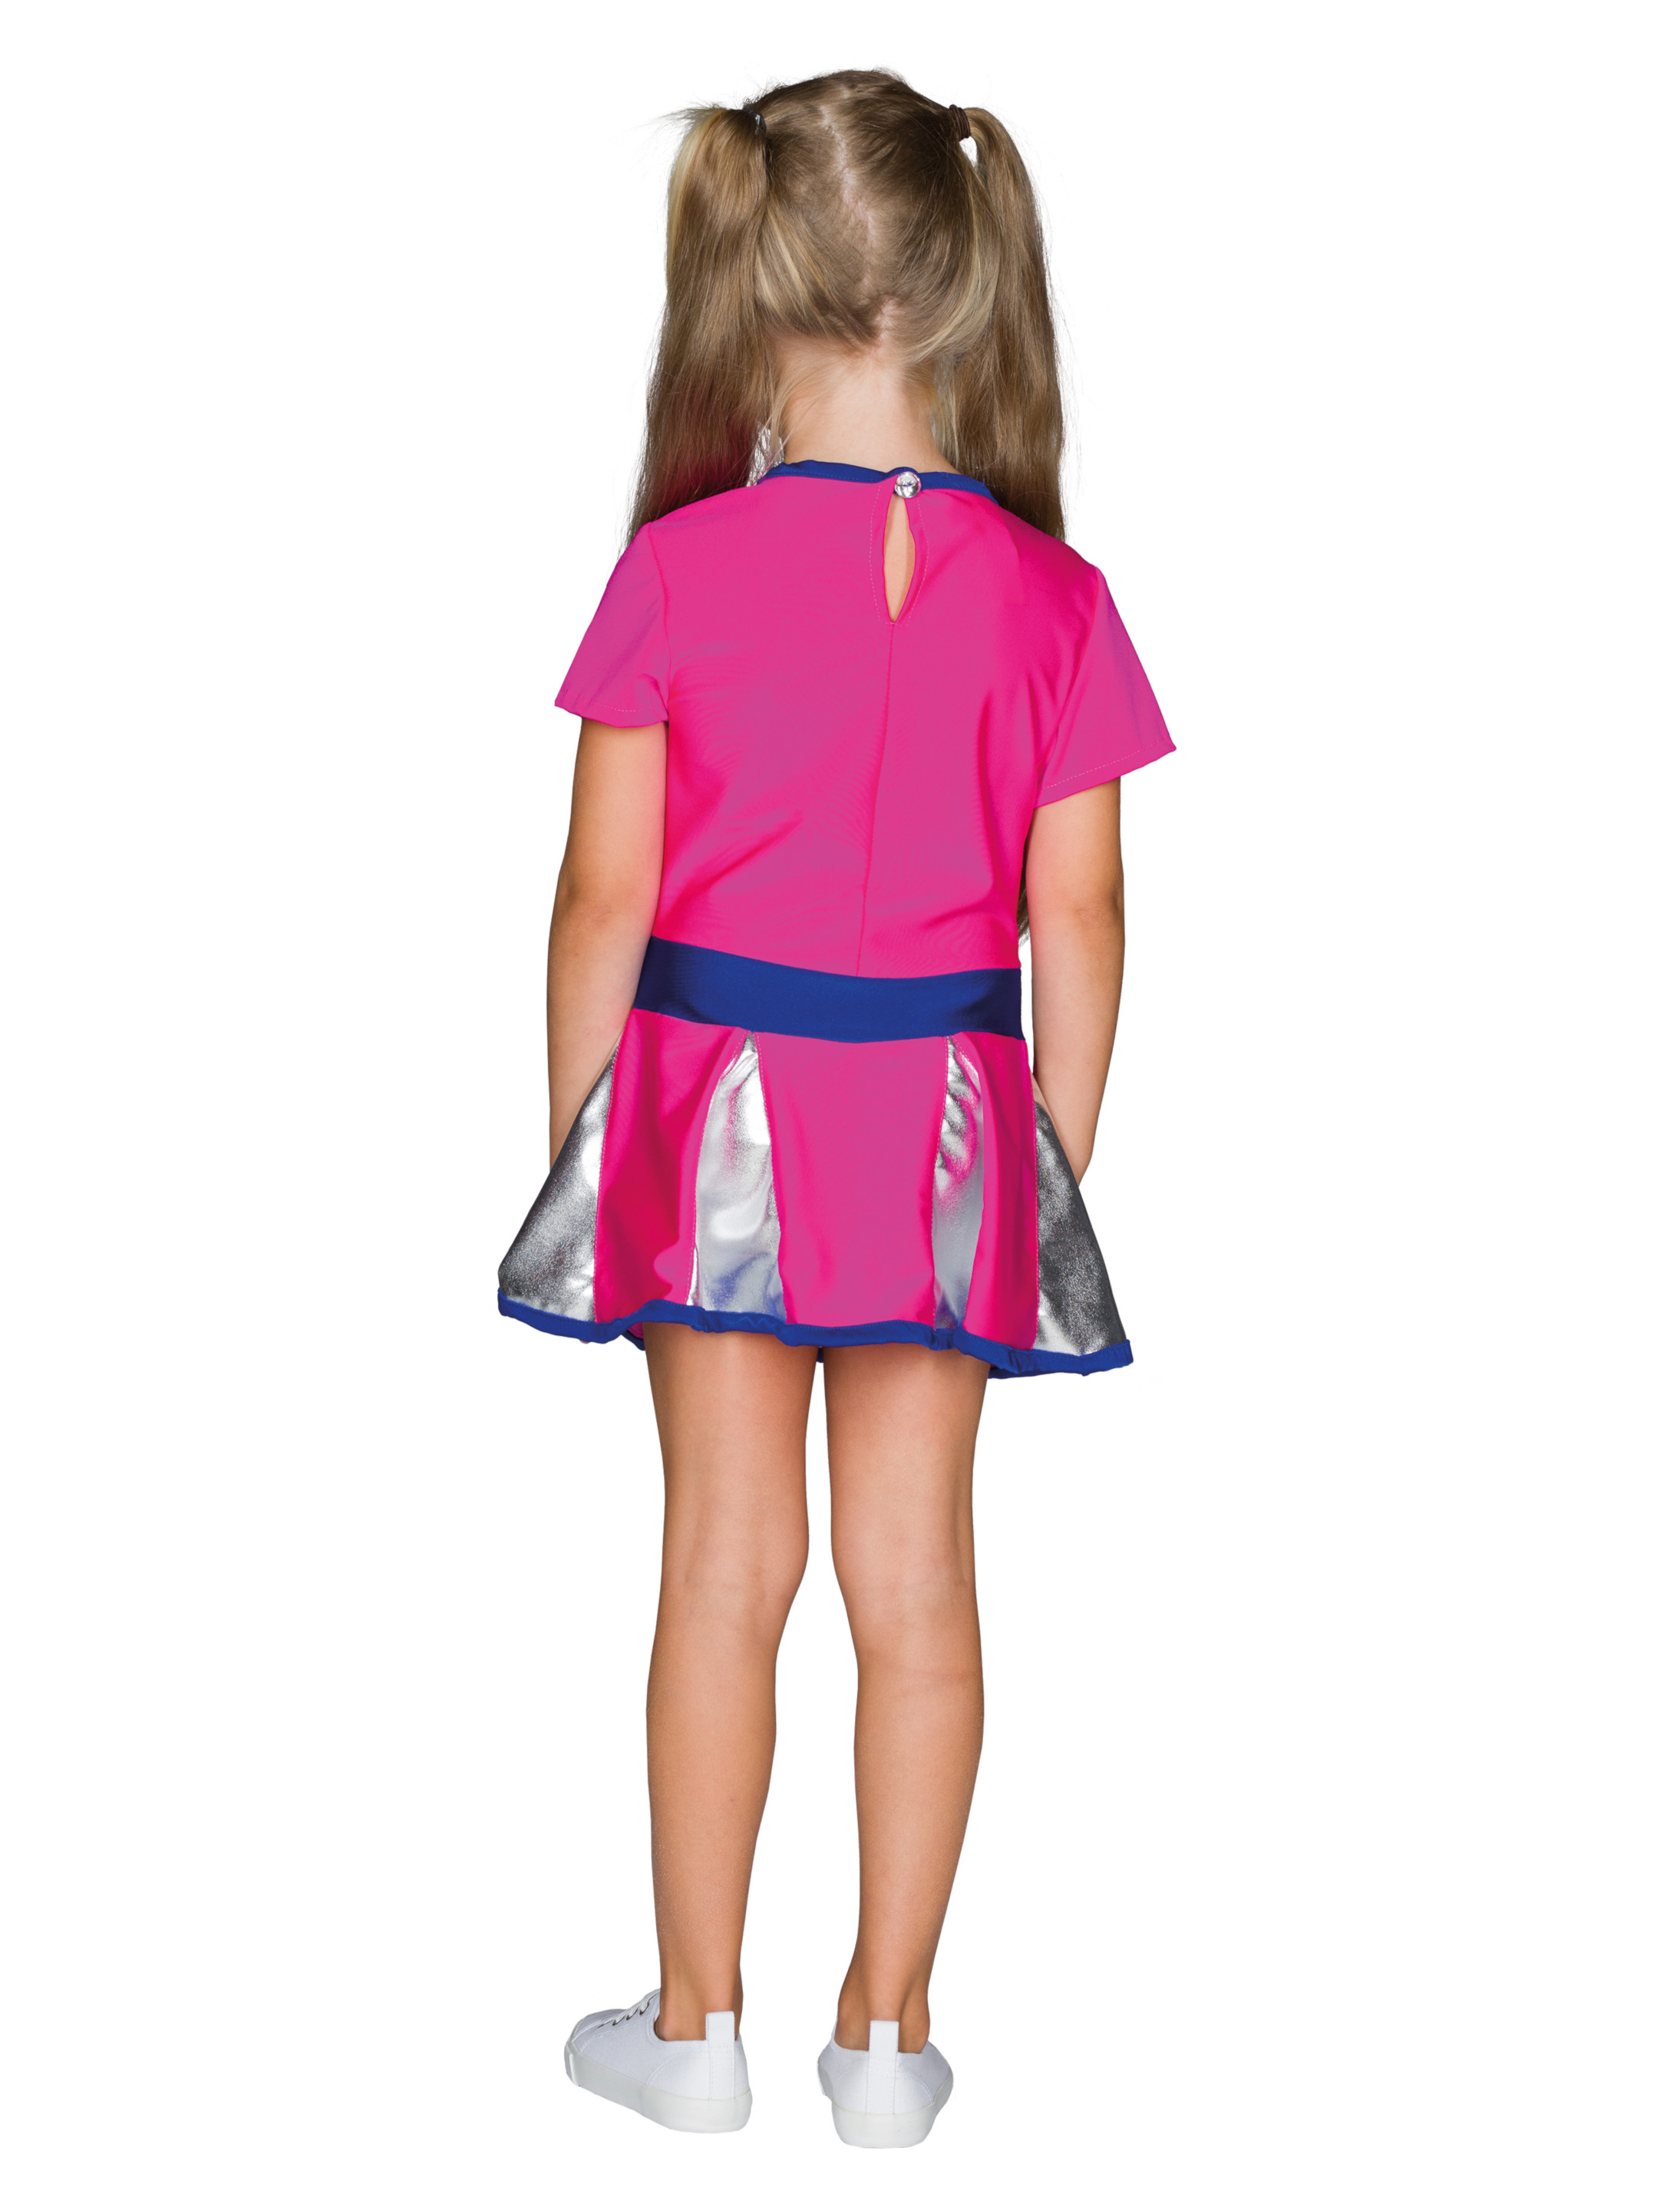 Kleid Cheerleader Kinder pink/silber 152